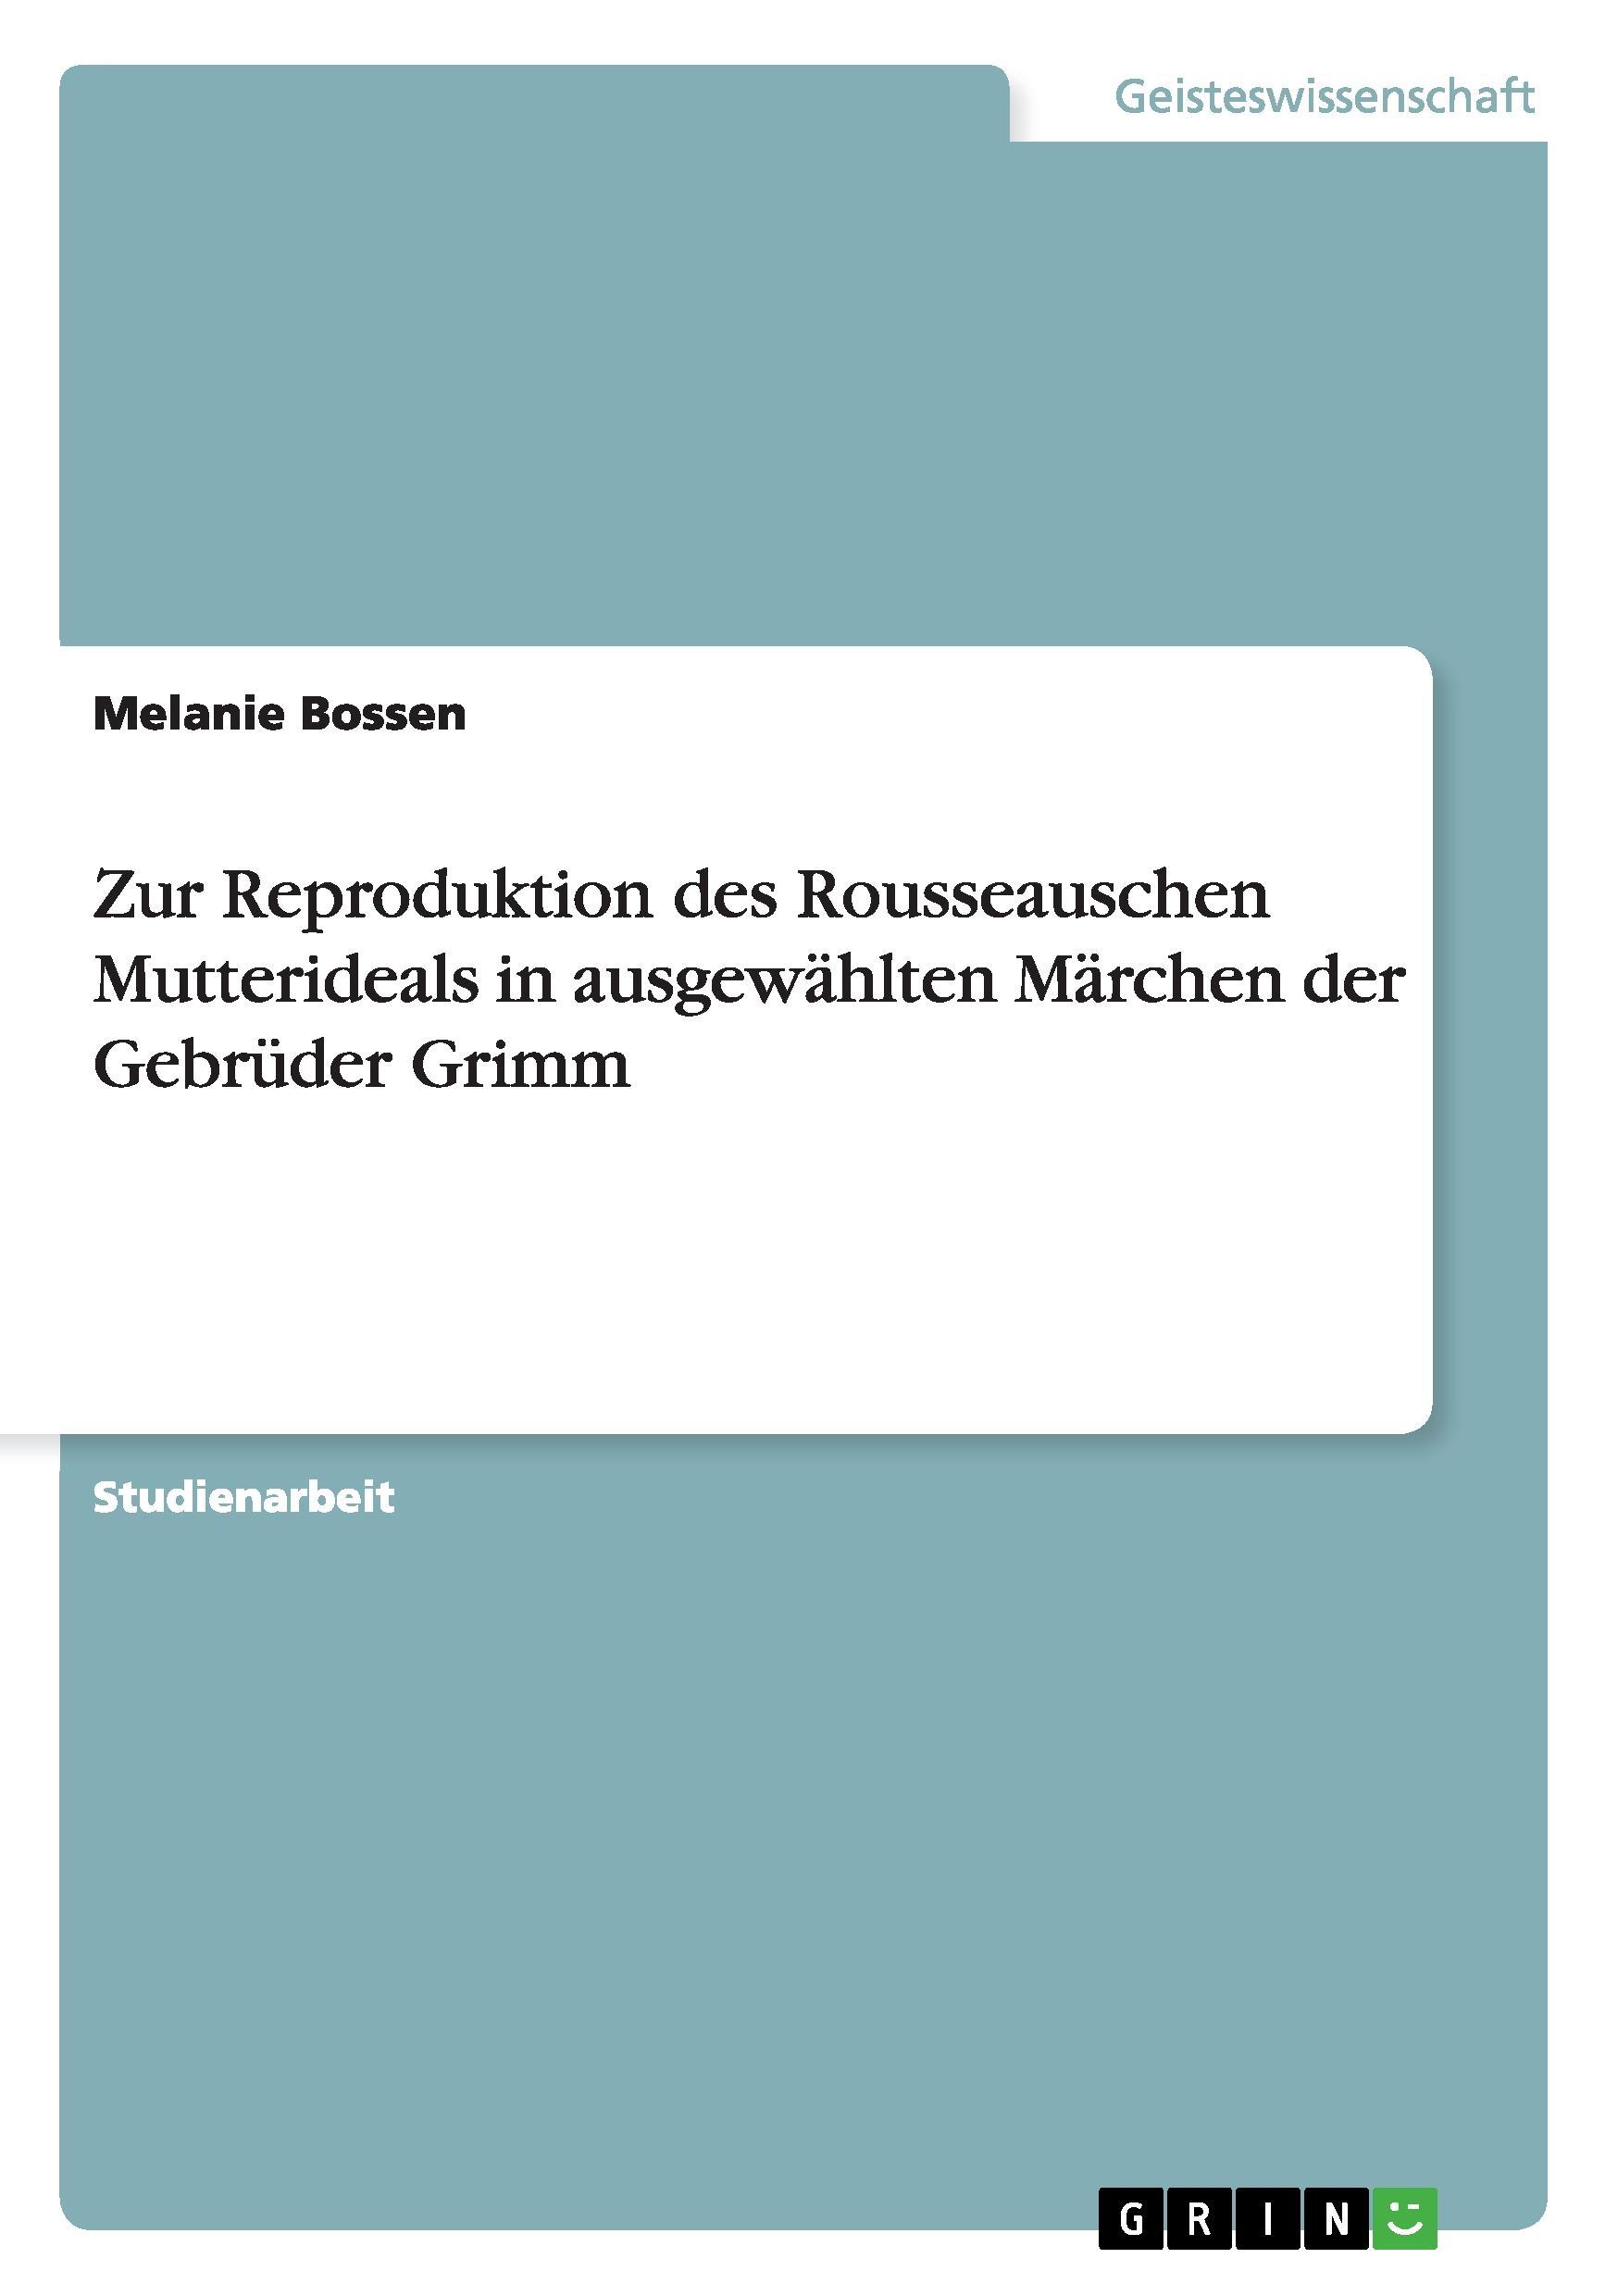 Zur Reproduktion des Rousseauschen Mutterideals in ausgewaehlten Maerchen der Gebrueder Grimm - Bossen, Melanie